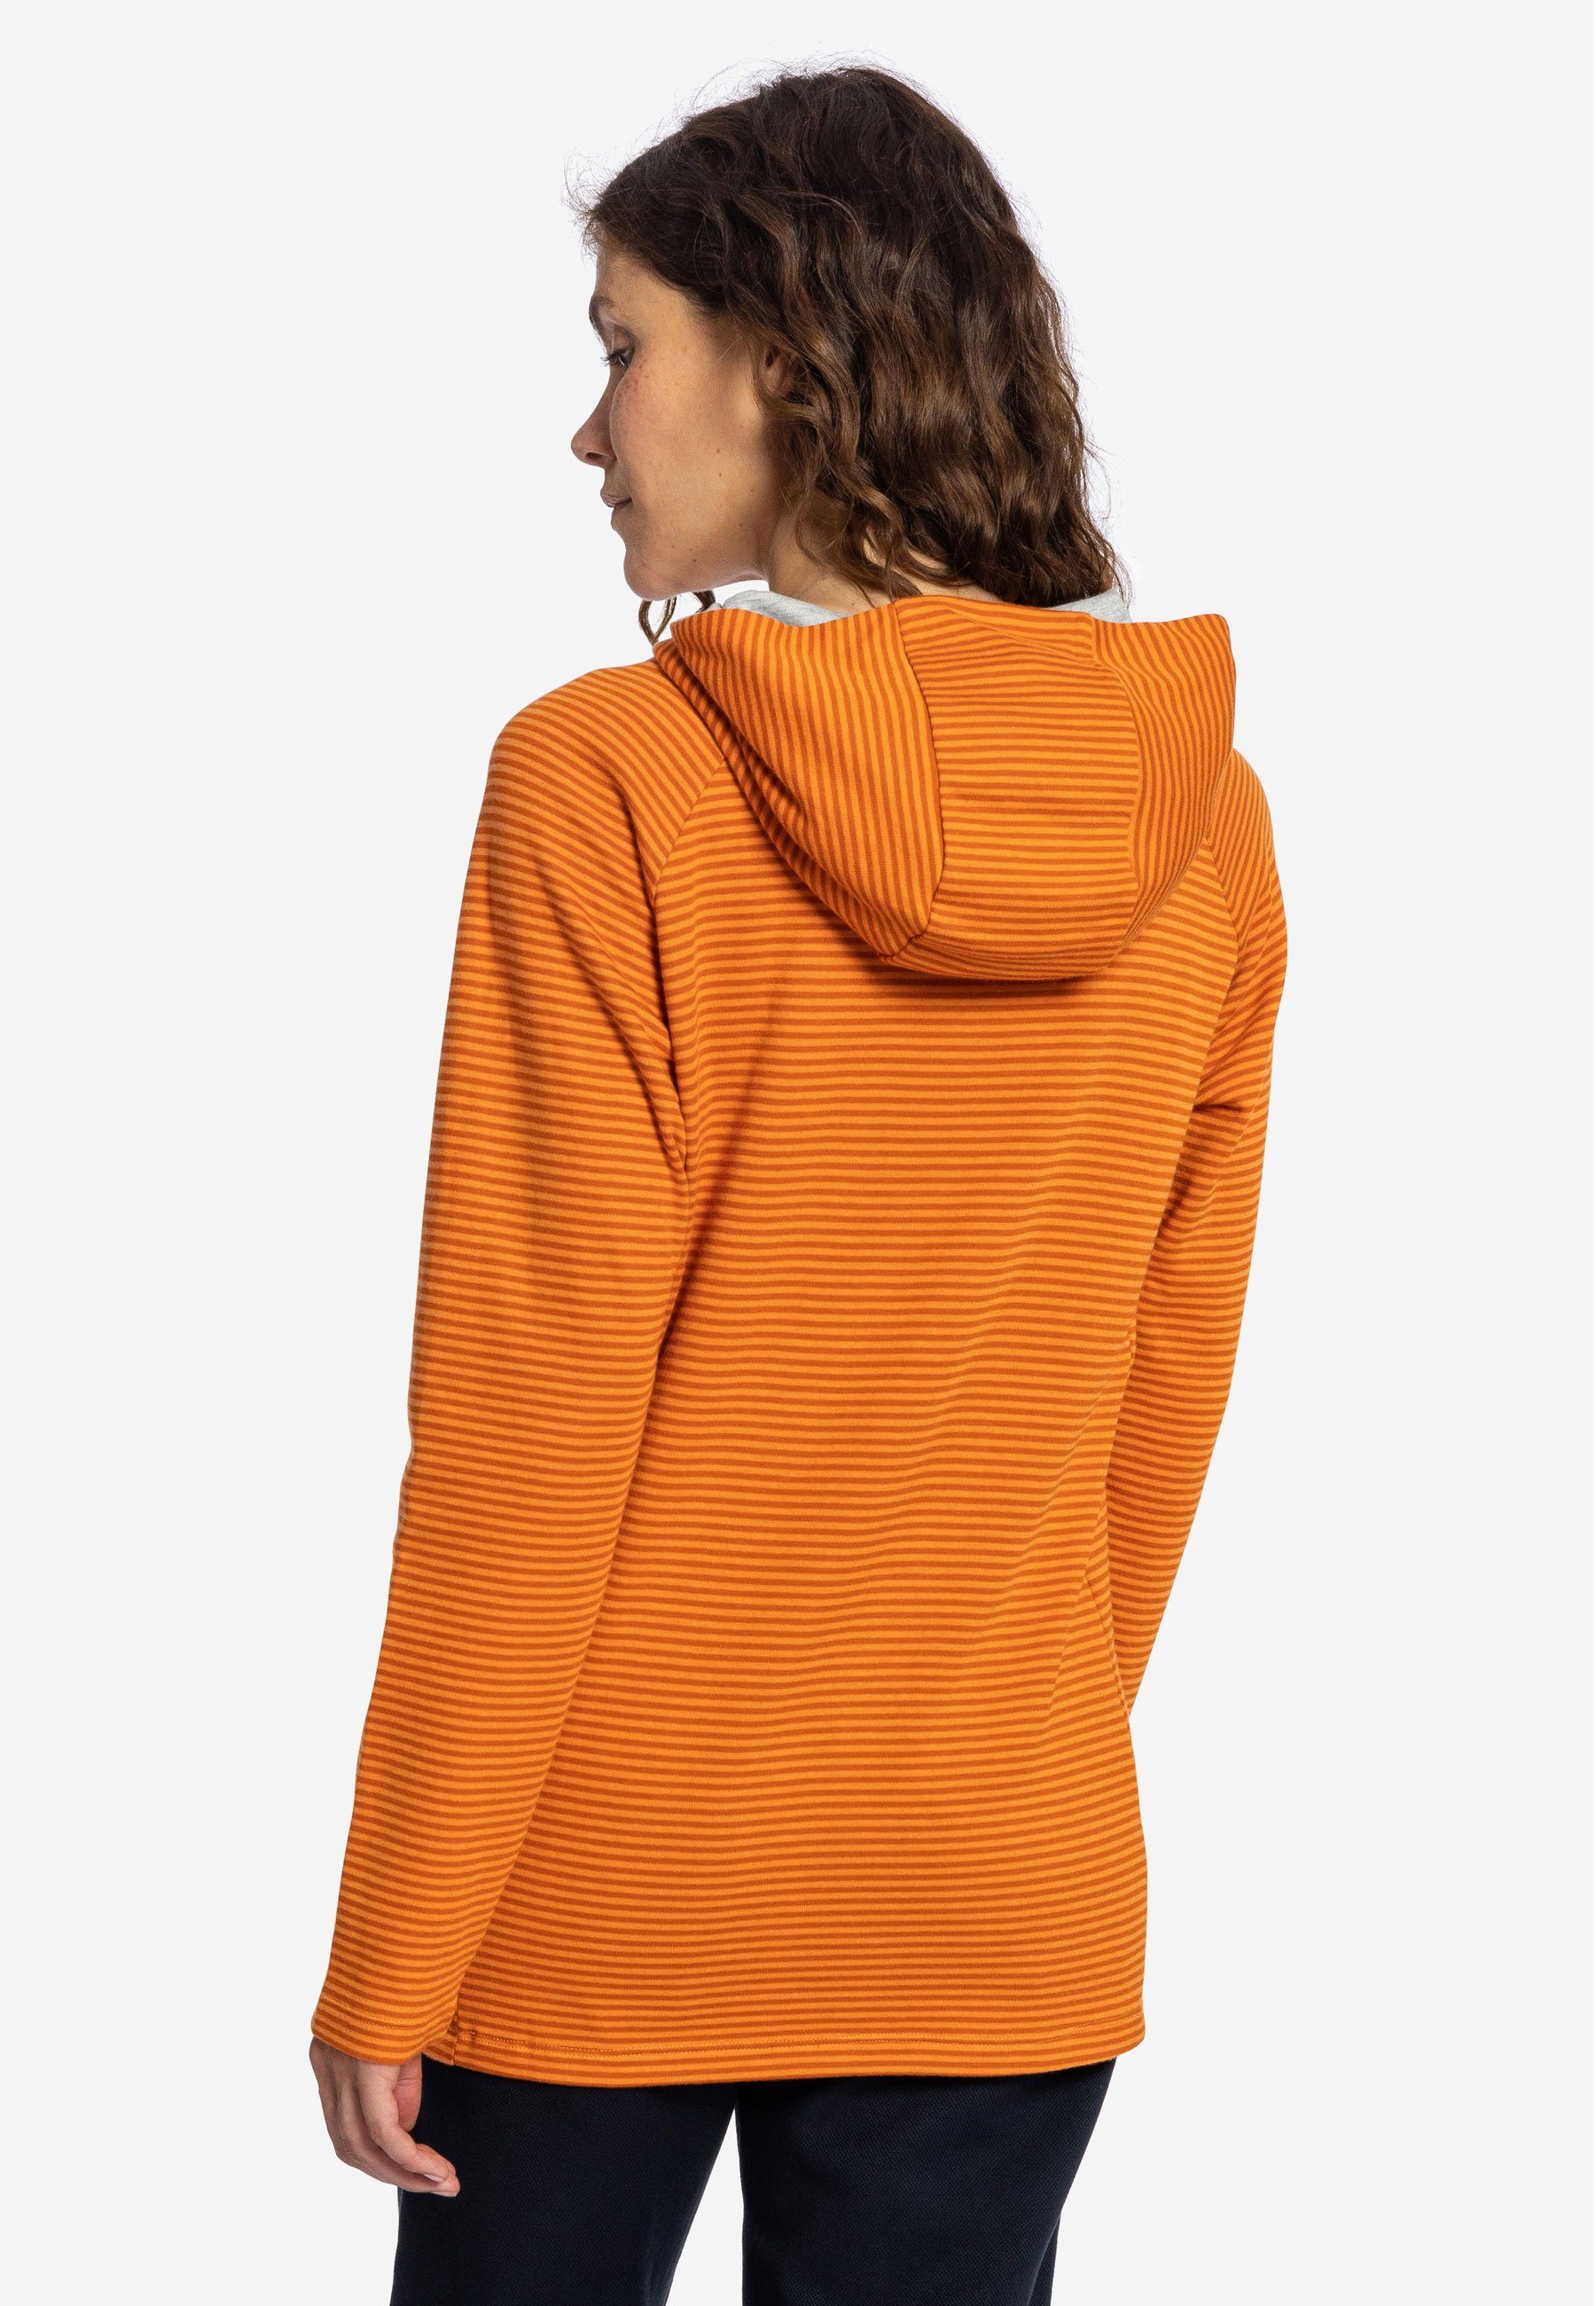 Kapuzenpullover darkorange Wetter mandarin Hoodie Elkline Streifen leicht Sweater - tailliert